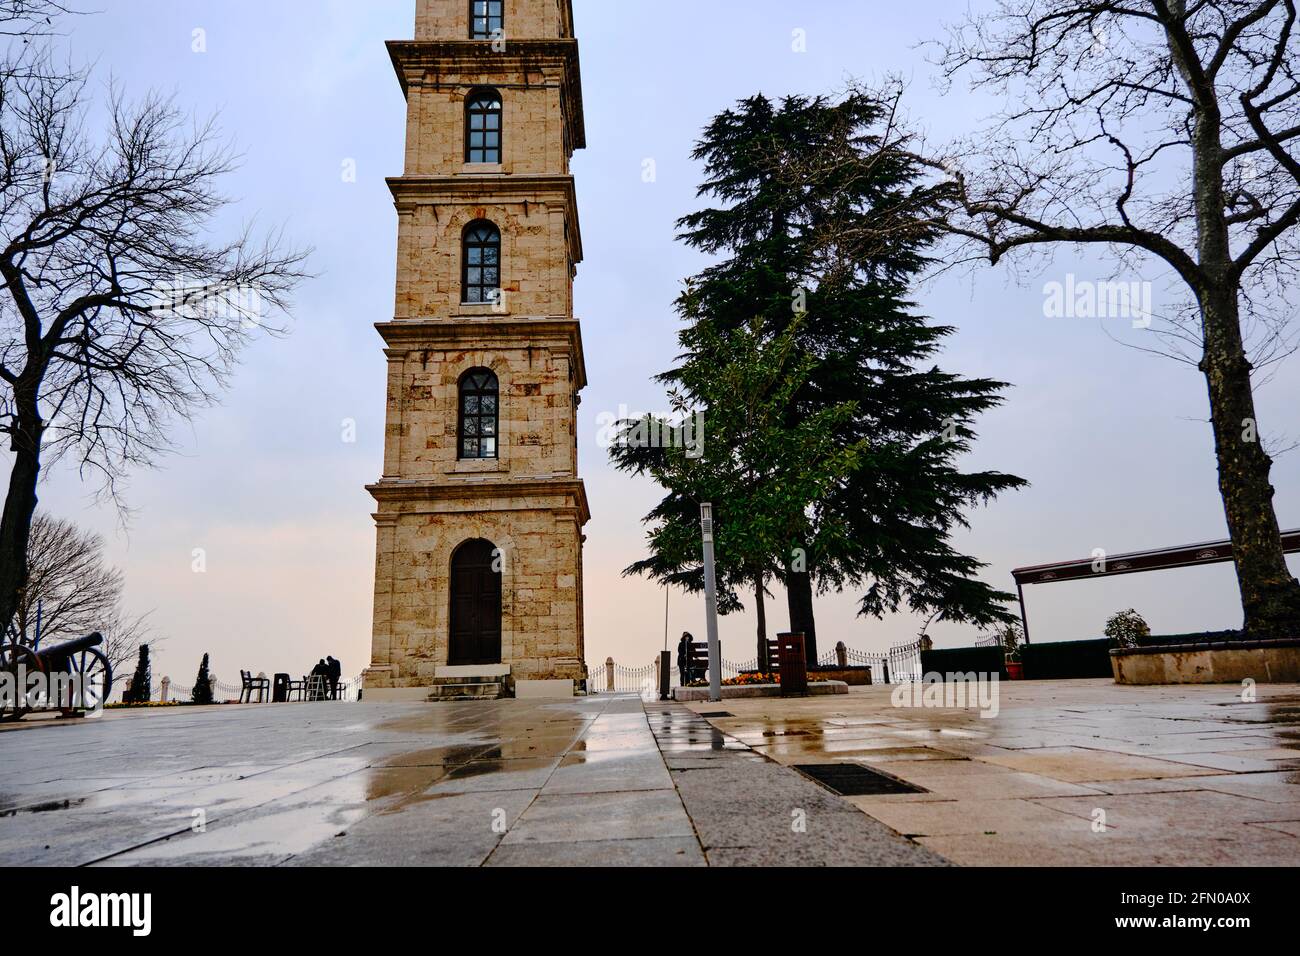 Bursa Tophane Bezirk mit altem Wachturm, der durch Ottomanen Reich errichtet wurde. Alte und alte Türme Fassade mit riesigen Wolken Hintergrund. Stockfoto